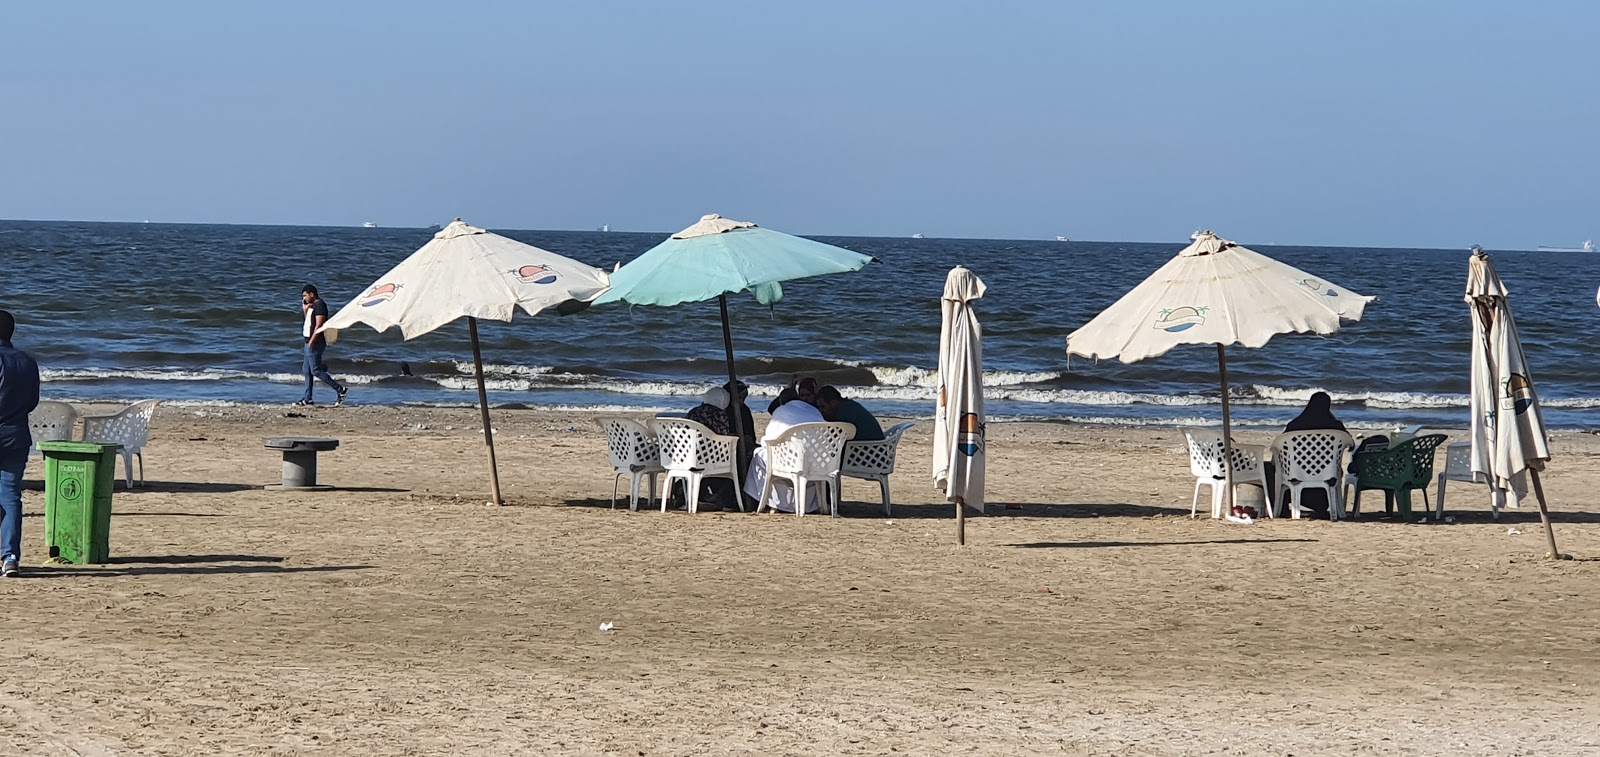 El Fayrouz Village Beach'in fotoğrafı kısmen temiz temizlik seviyesi ile